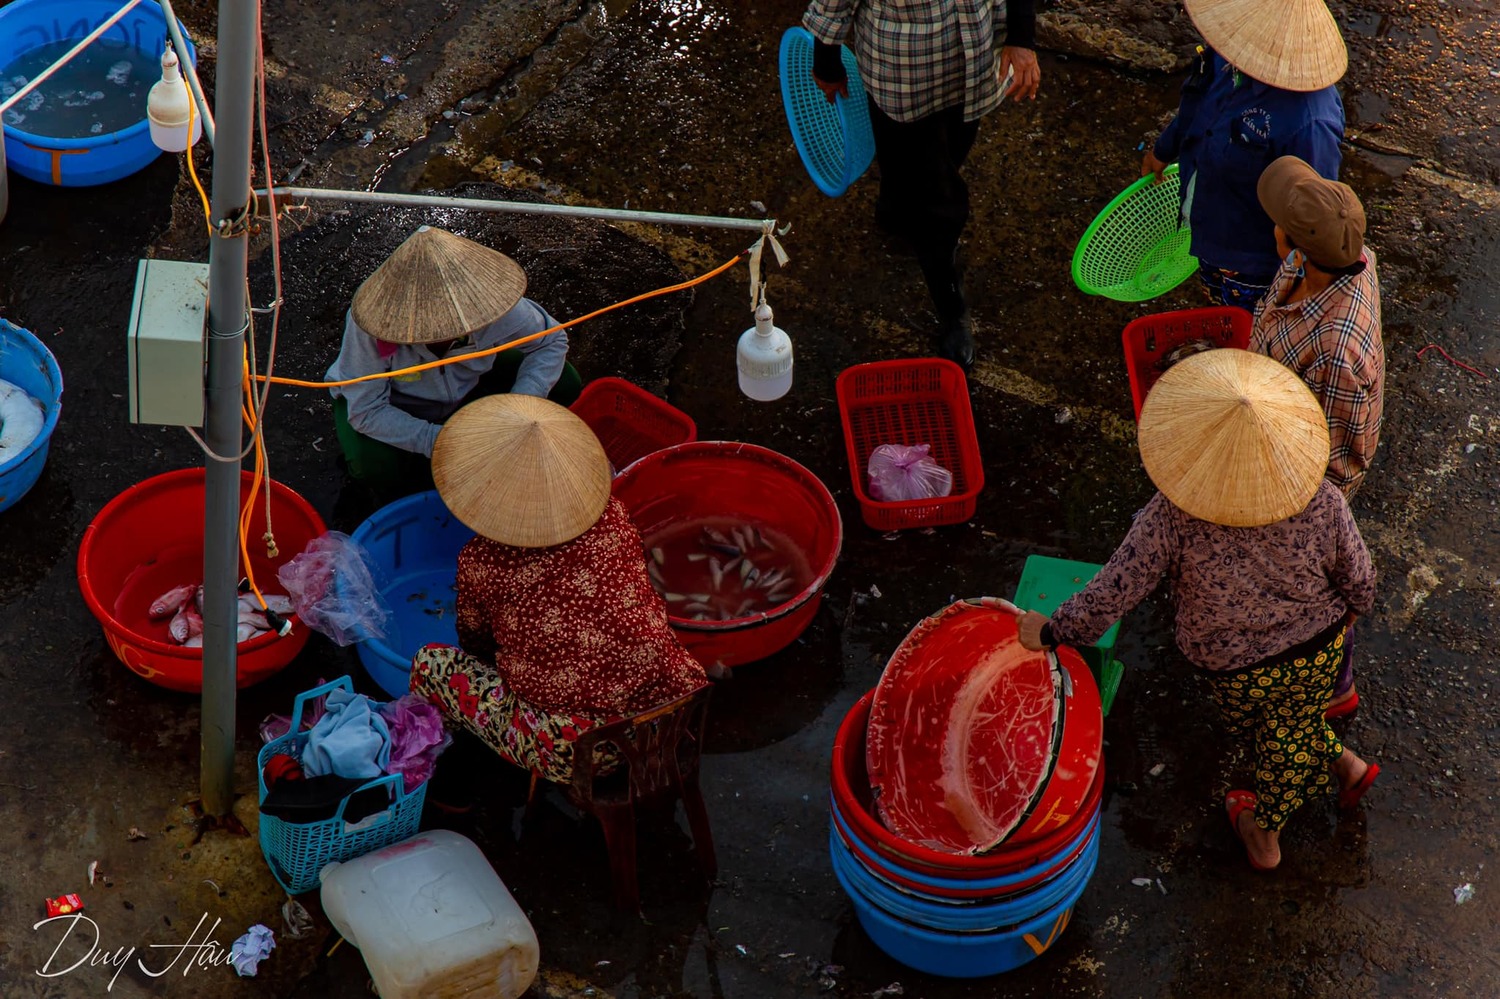 Chợ cá Thanh Hà Hội An - Chợ hải sản tươi sống ngon nhất phố cổ 7